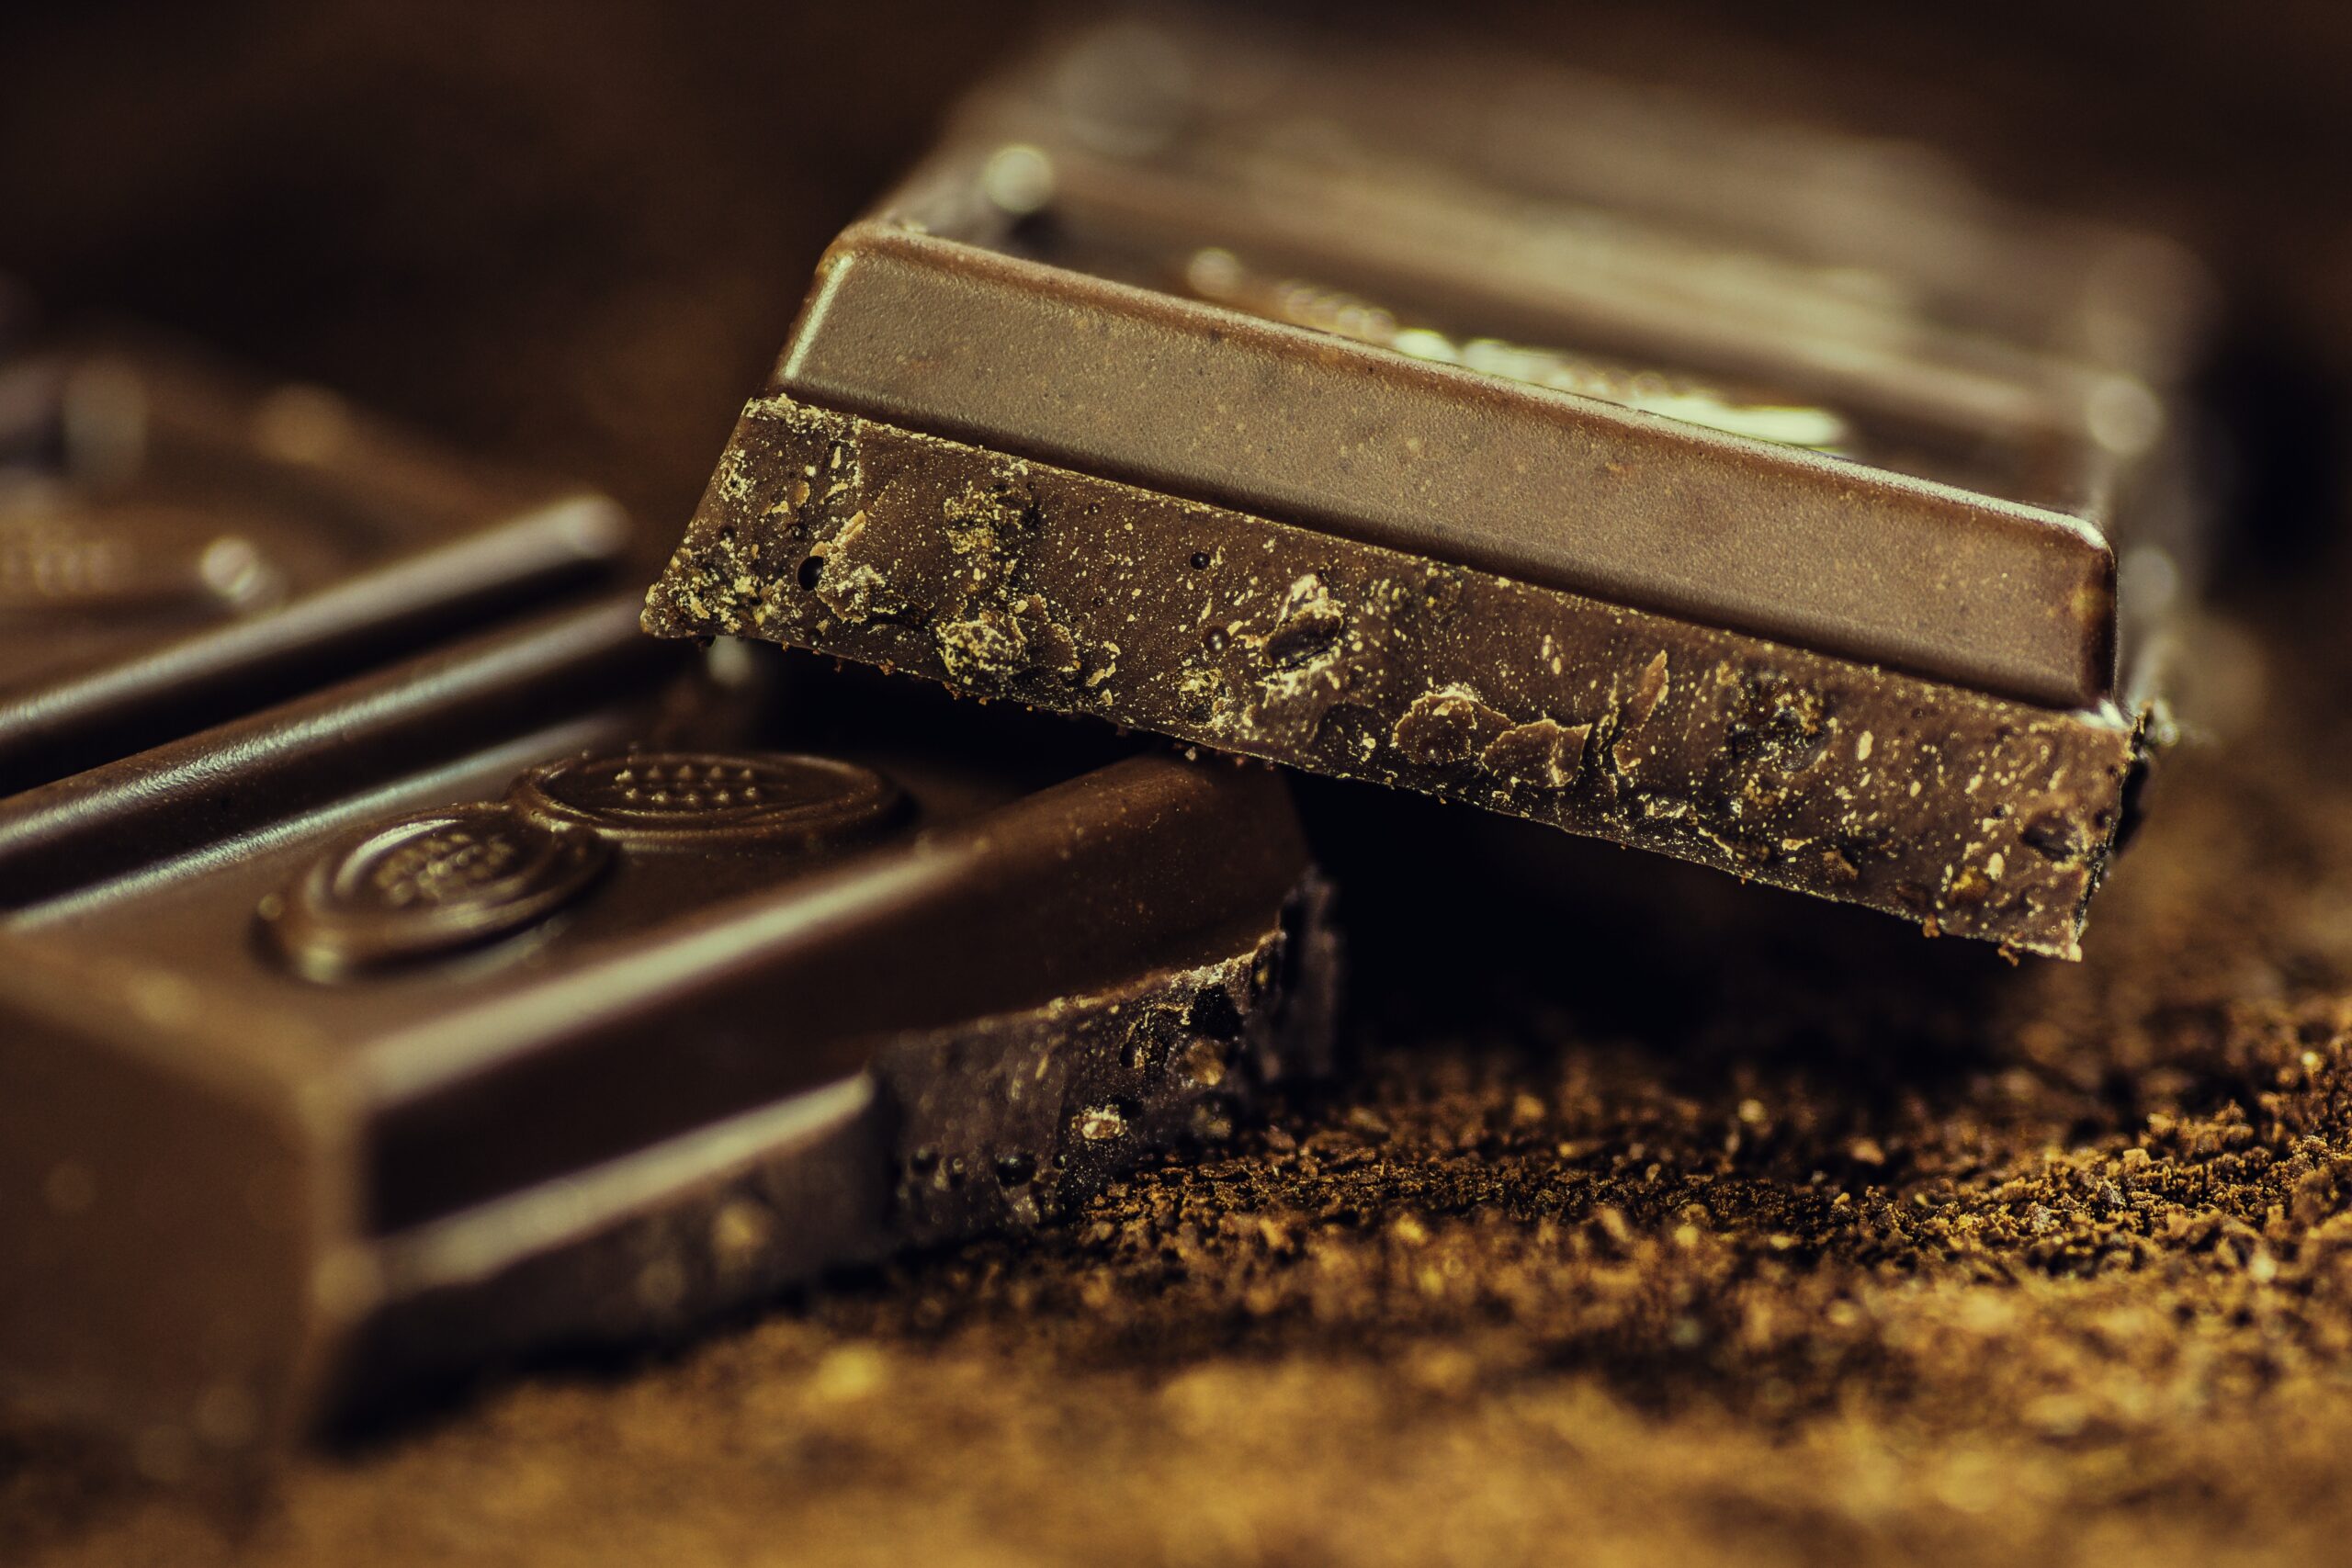 Dark chocolate benefits